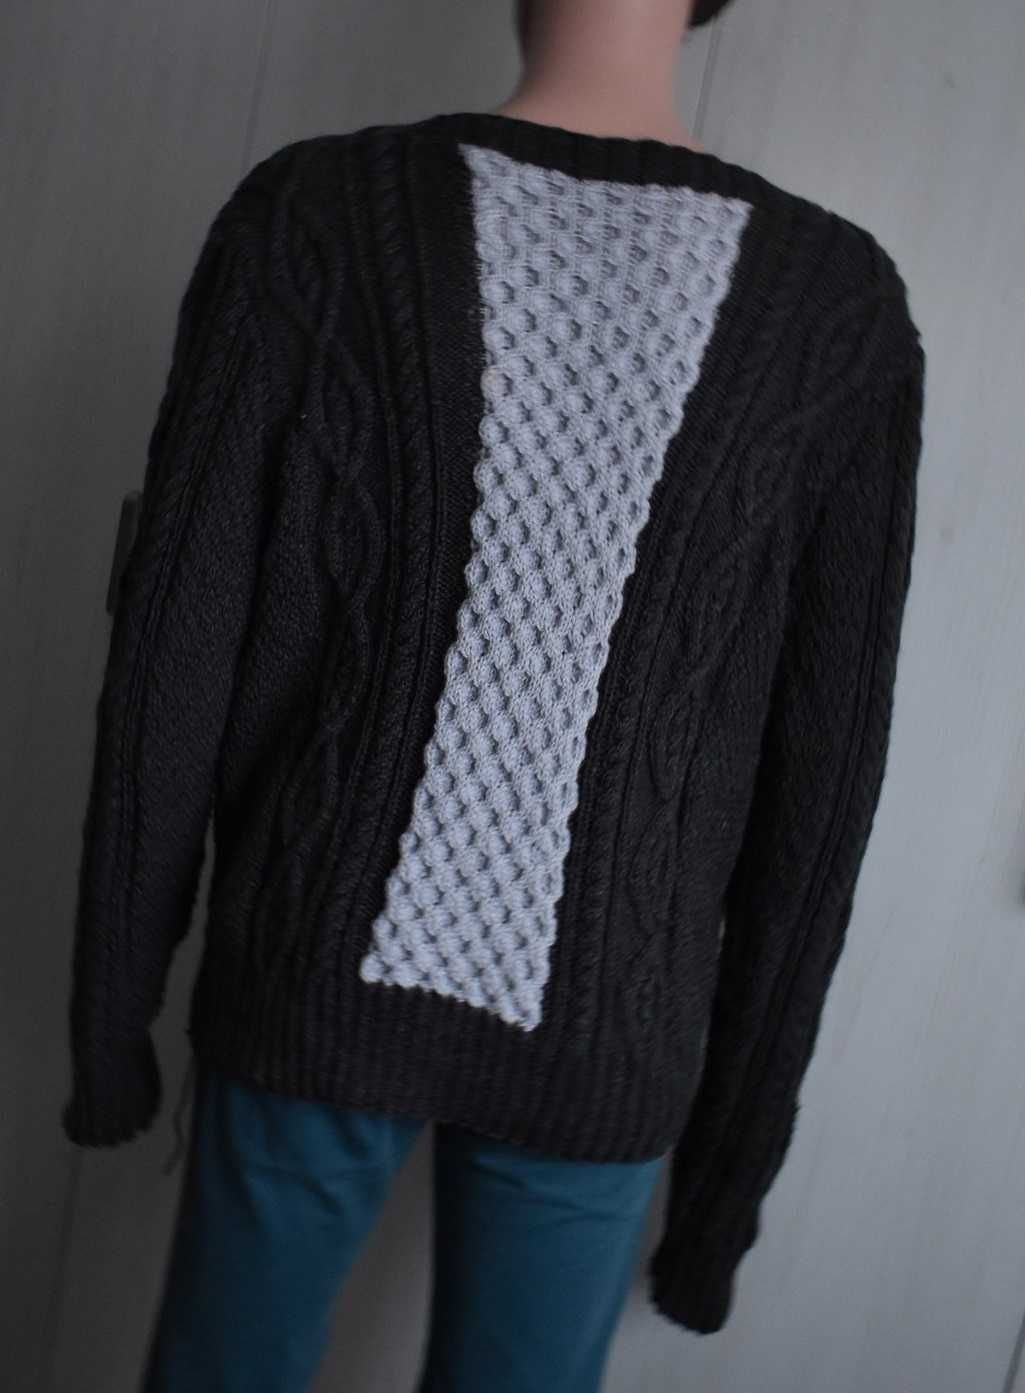 Sweterek XL handmade retro vintage warkocze ciepły męski szary